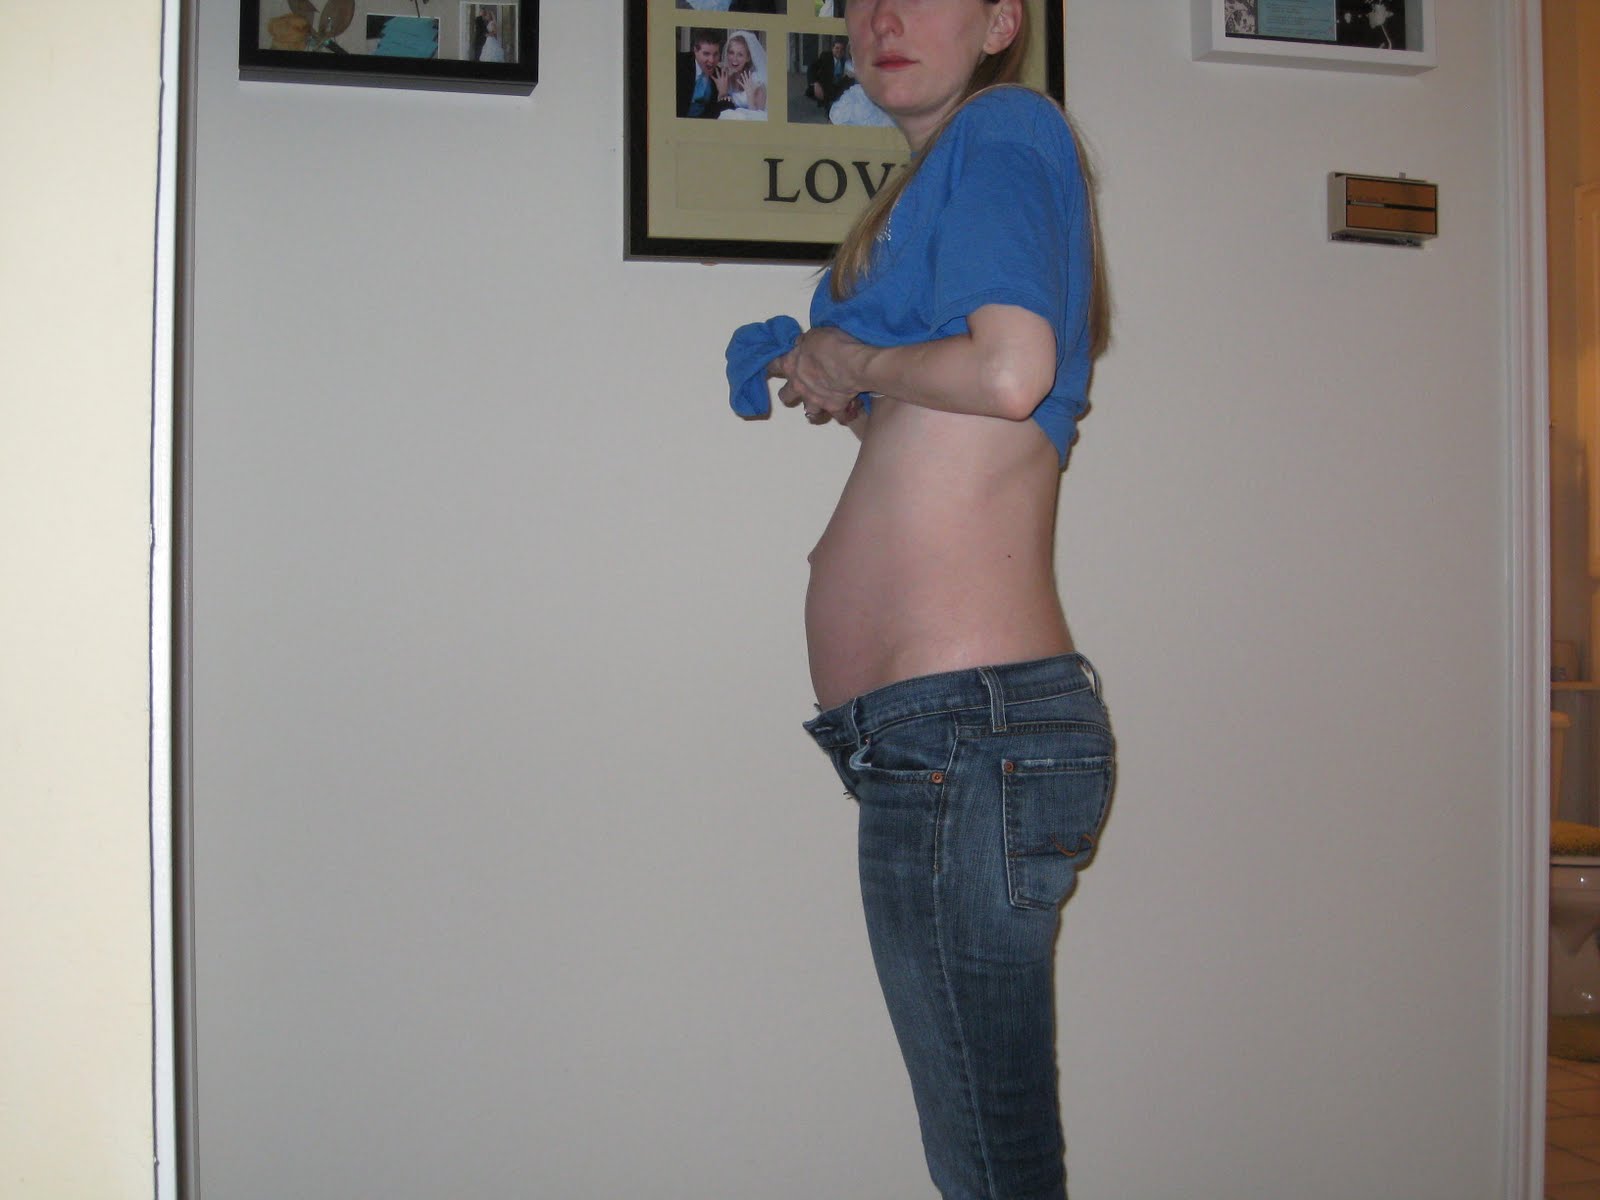 23 недели живот фото. Живот на 23 неделе беременности. Беременность 23 акушерские недели живот. Животик на 23 неделе беременности. Живот на 23 неделе беременности мальчиком.